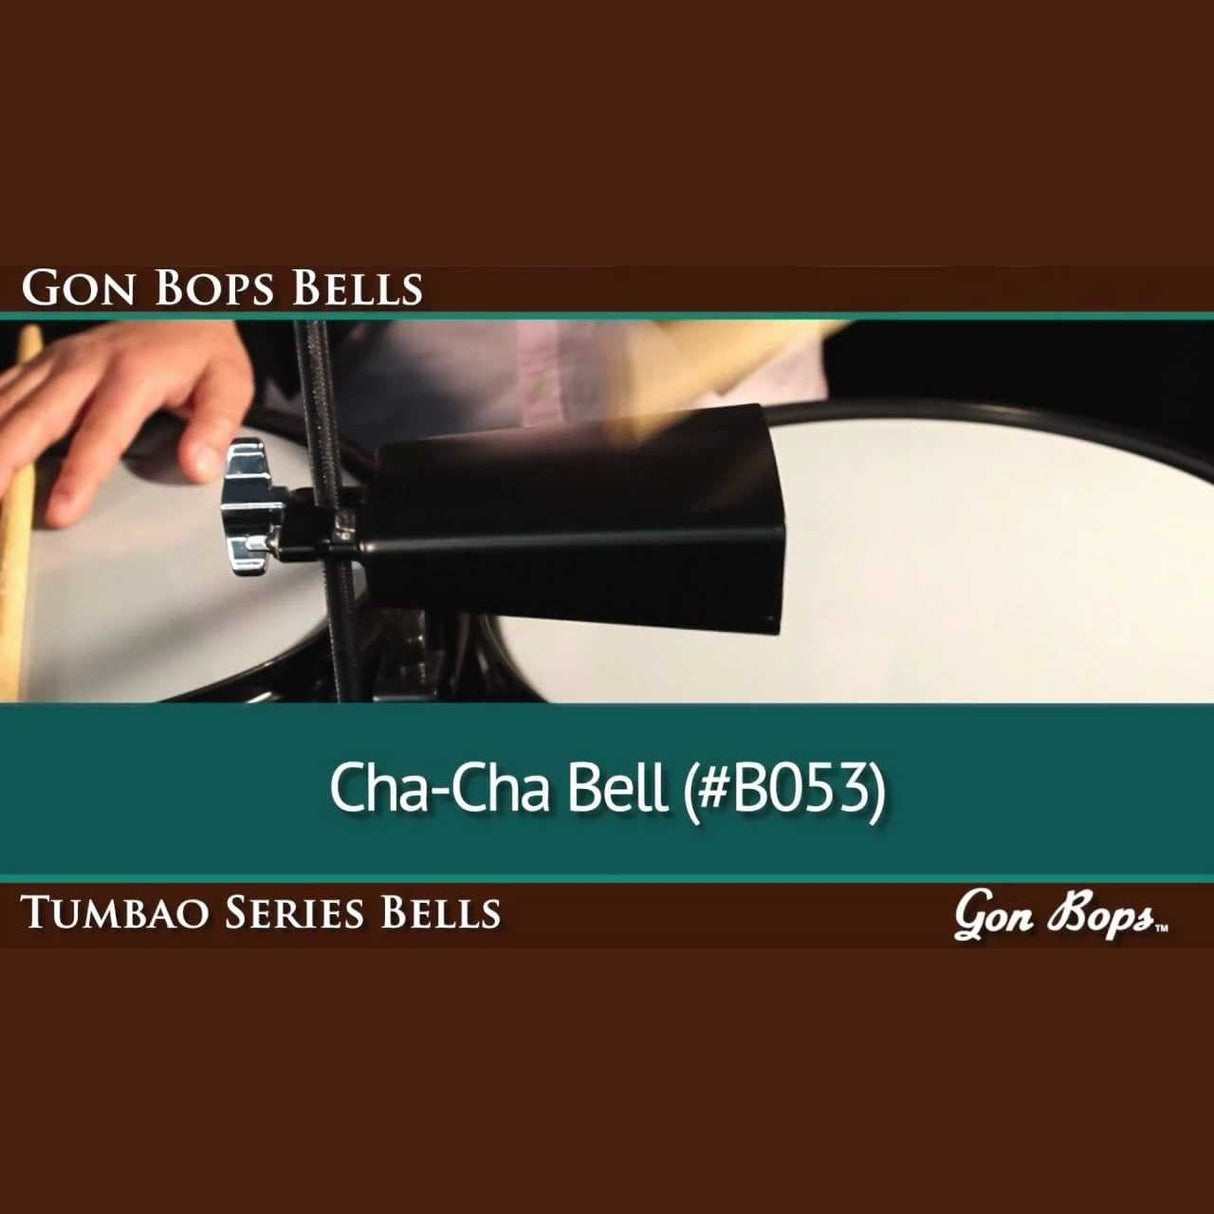 Gon Bops Tumbao Cha-Cha Bell